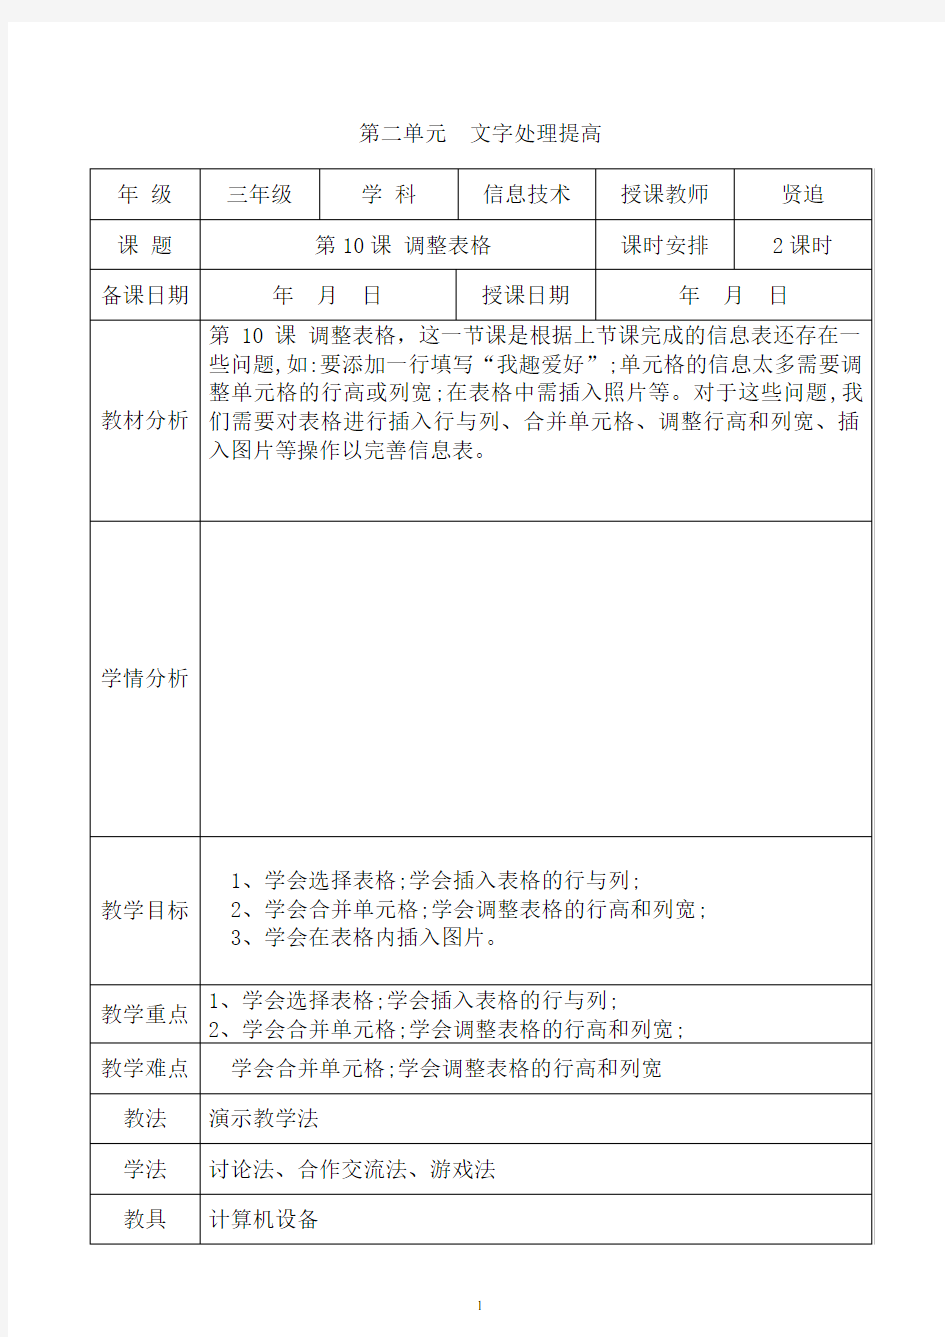 新纲要云南省实验教材三年级第2册《信息技术》第10课 调整表格教学设计(教案)